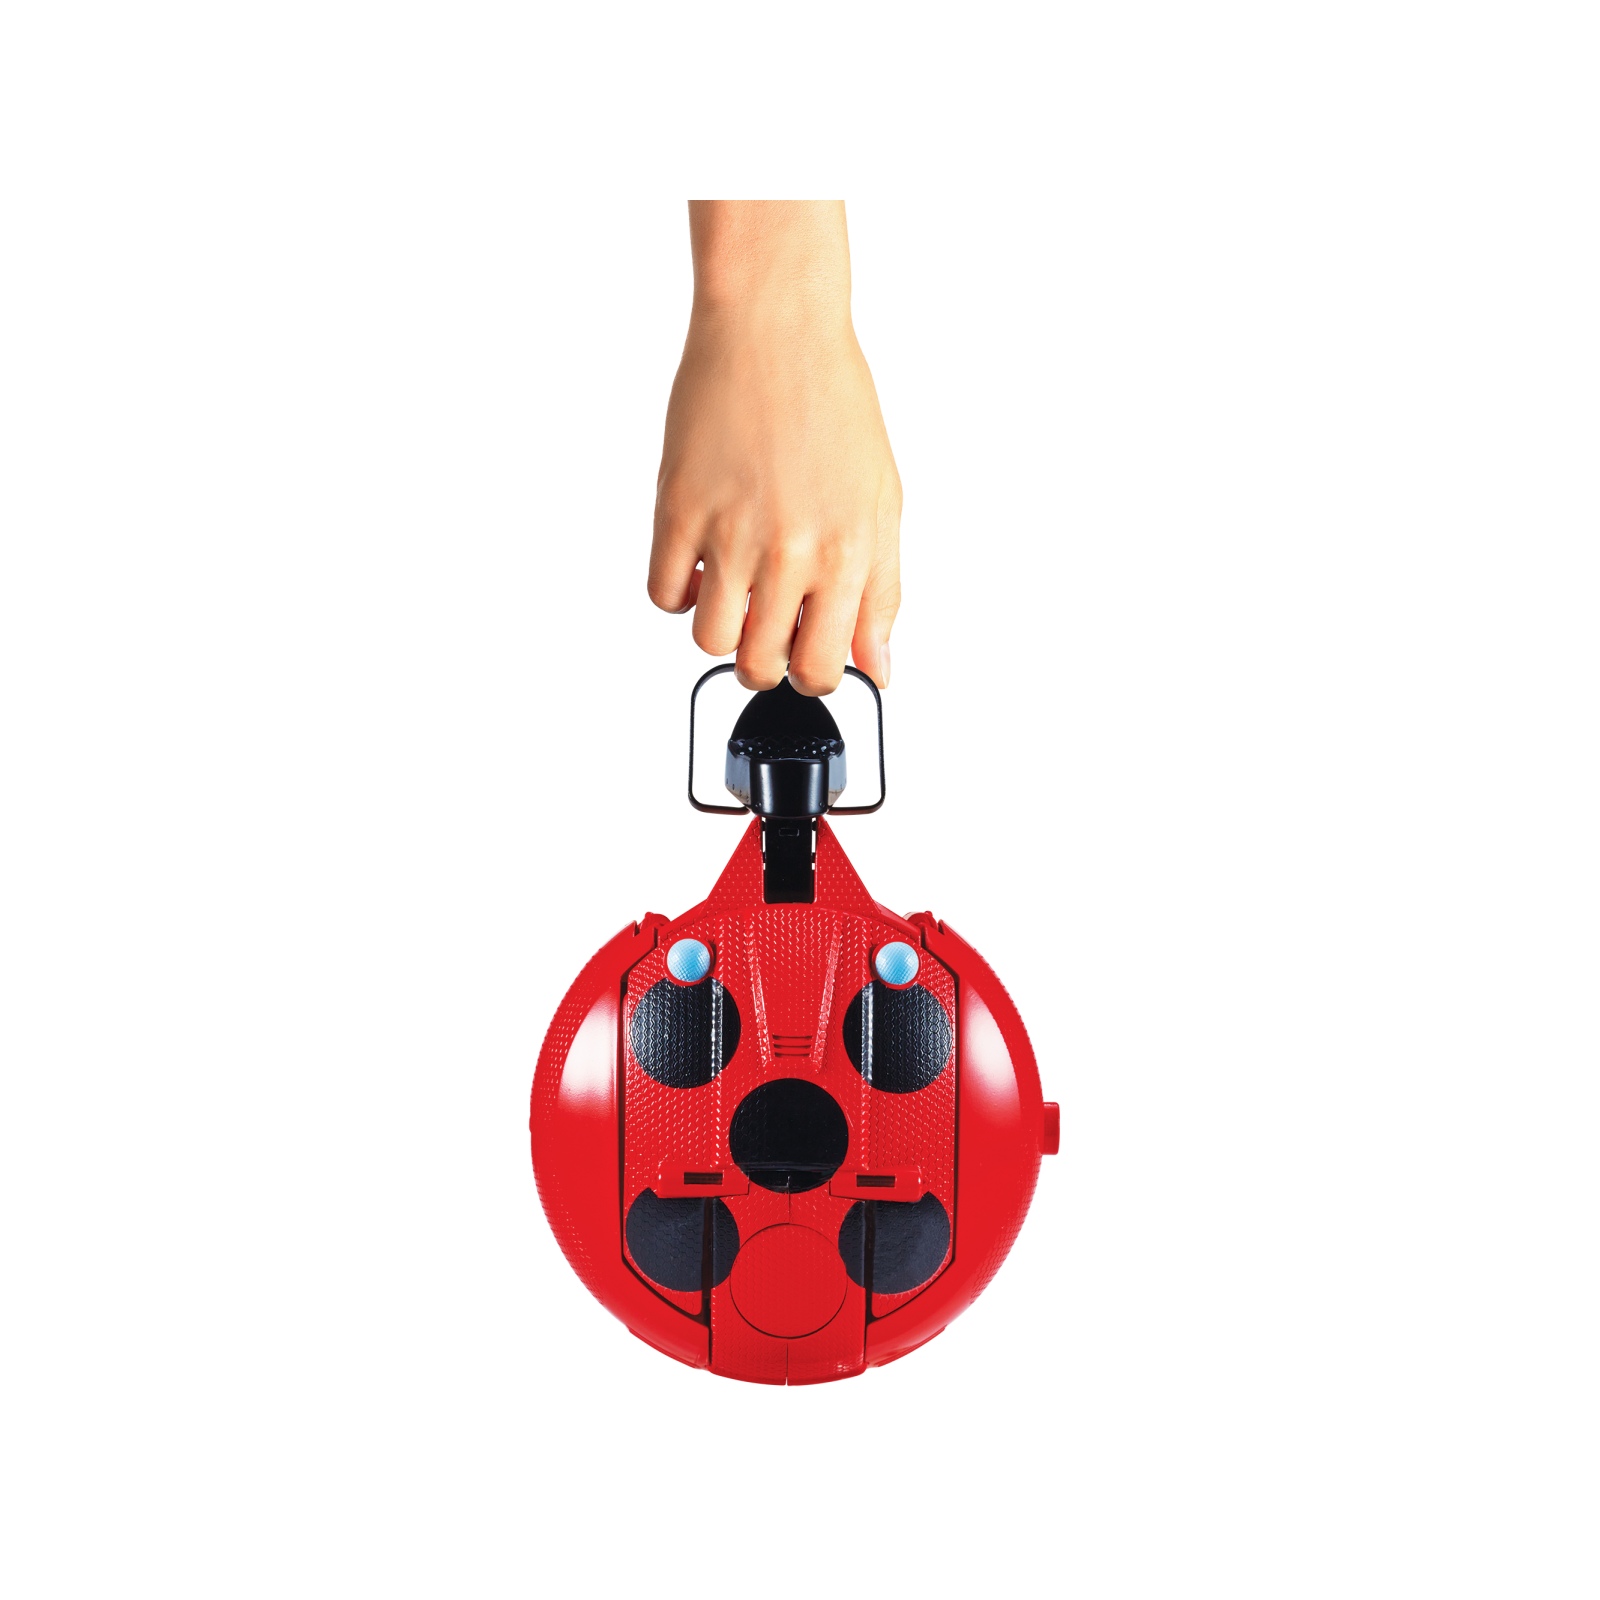 Bandai - miraculous -  scooter trasformabile - bambola articolata ladybug da 26cm - Miraculous - Ladybug